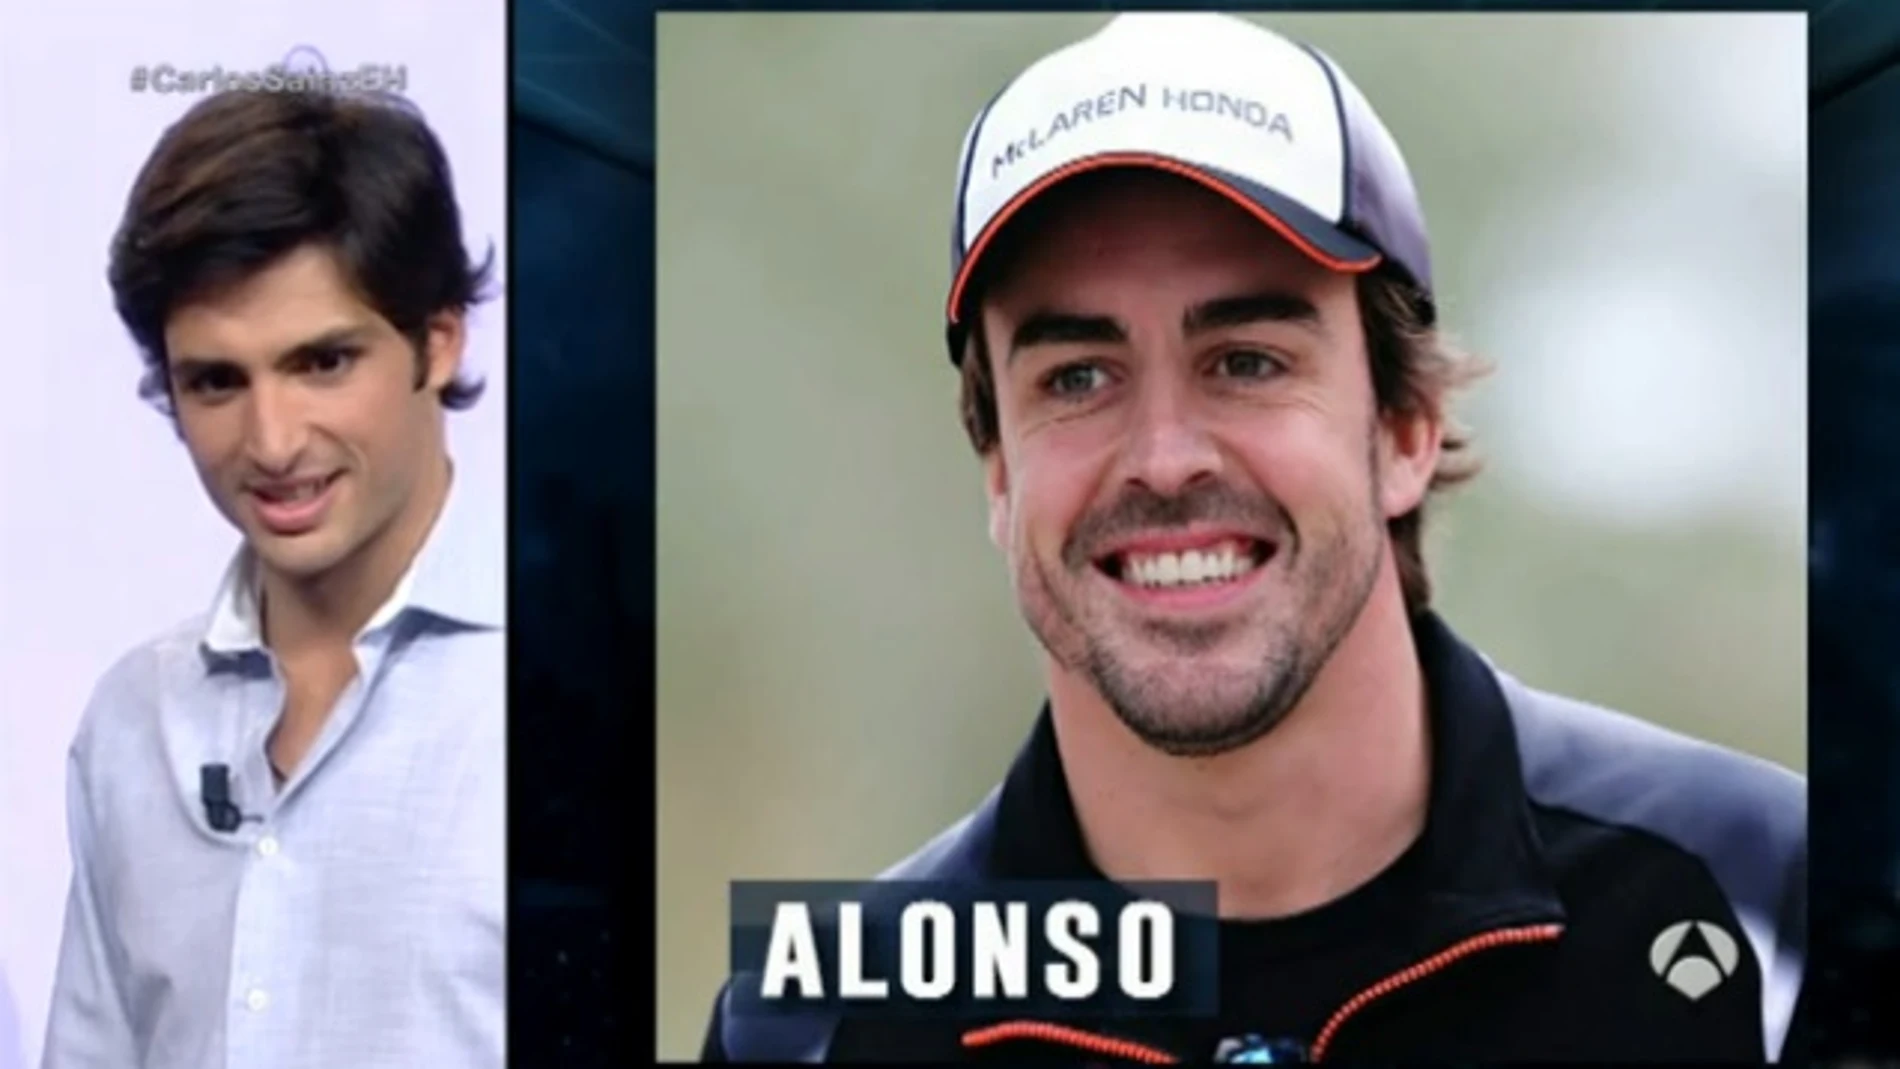 ¿Cuál esa el mote que le ha puesto Sainz a Alonso?